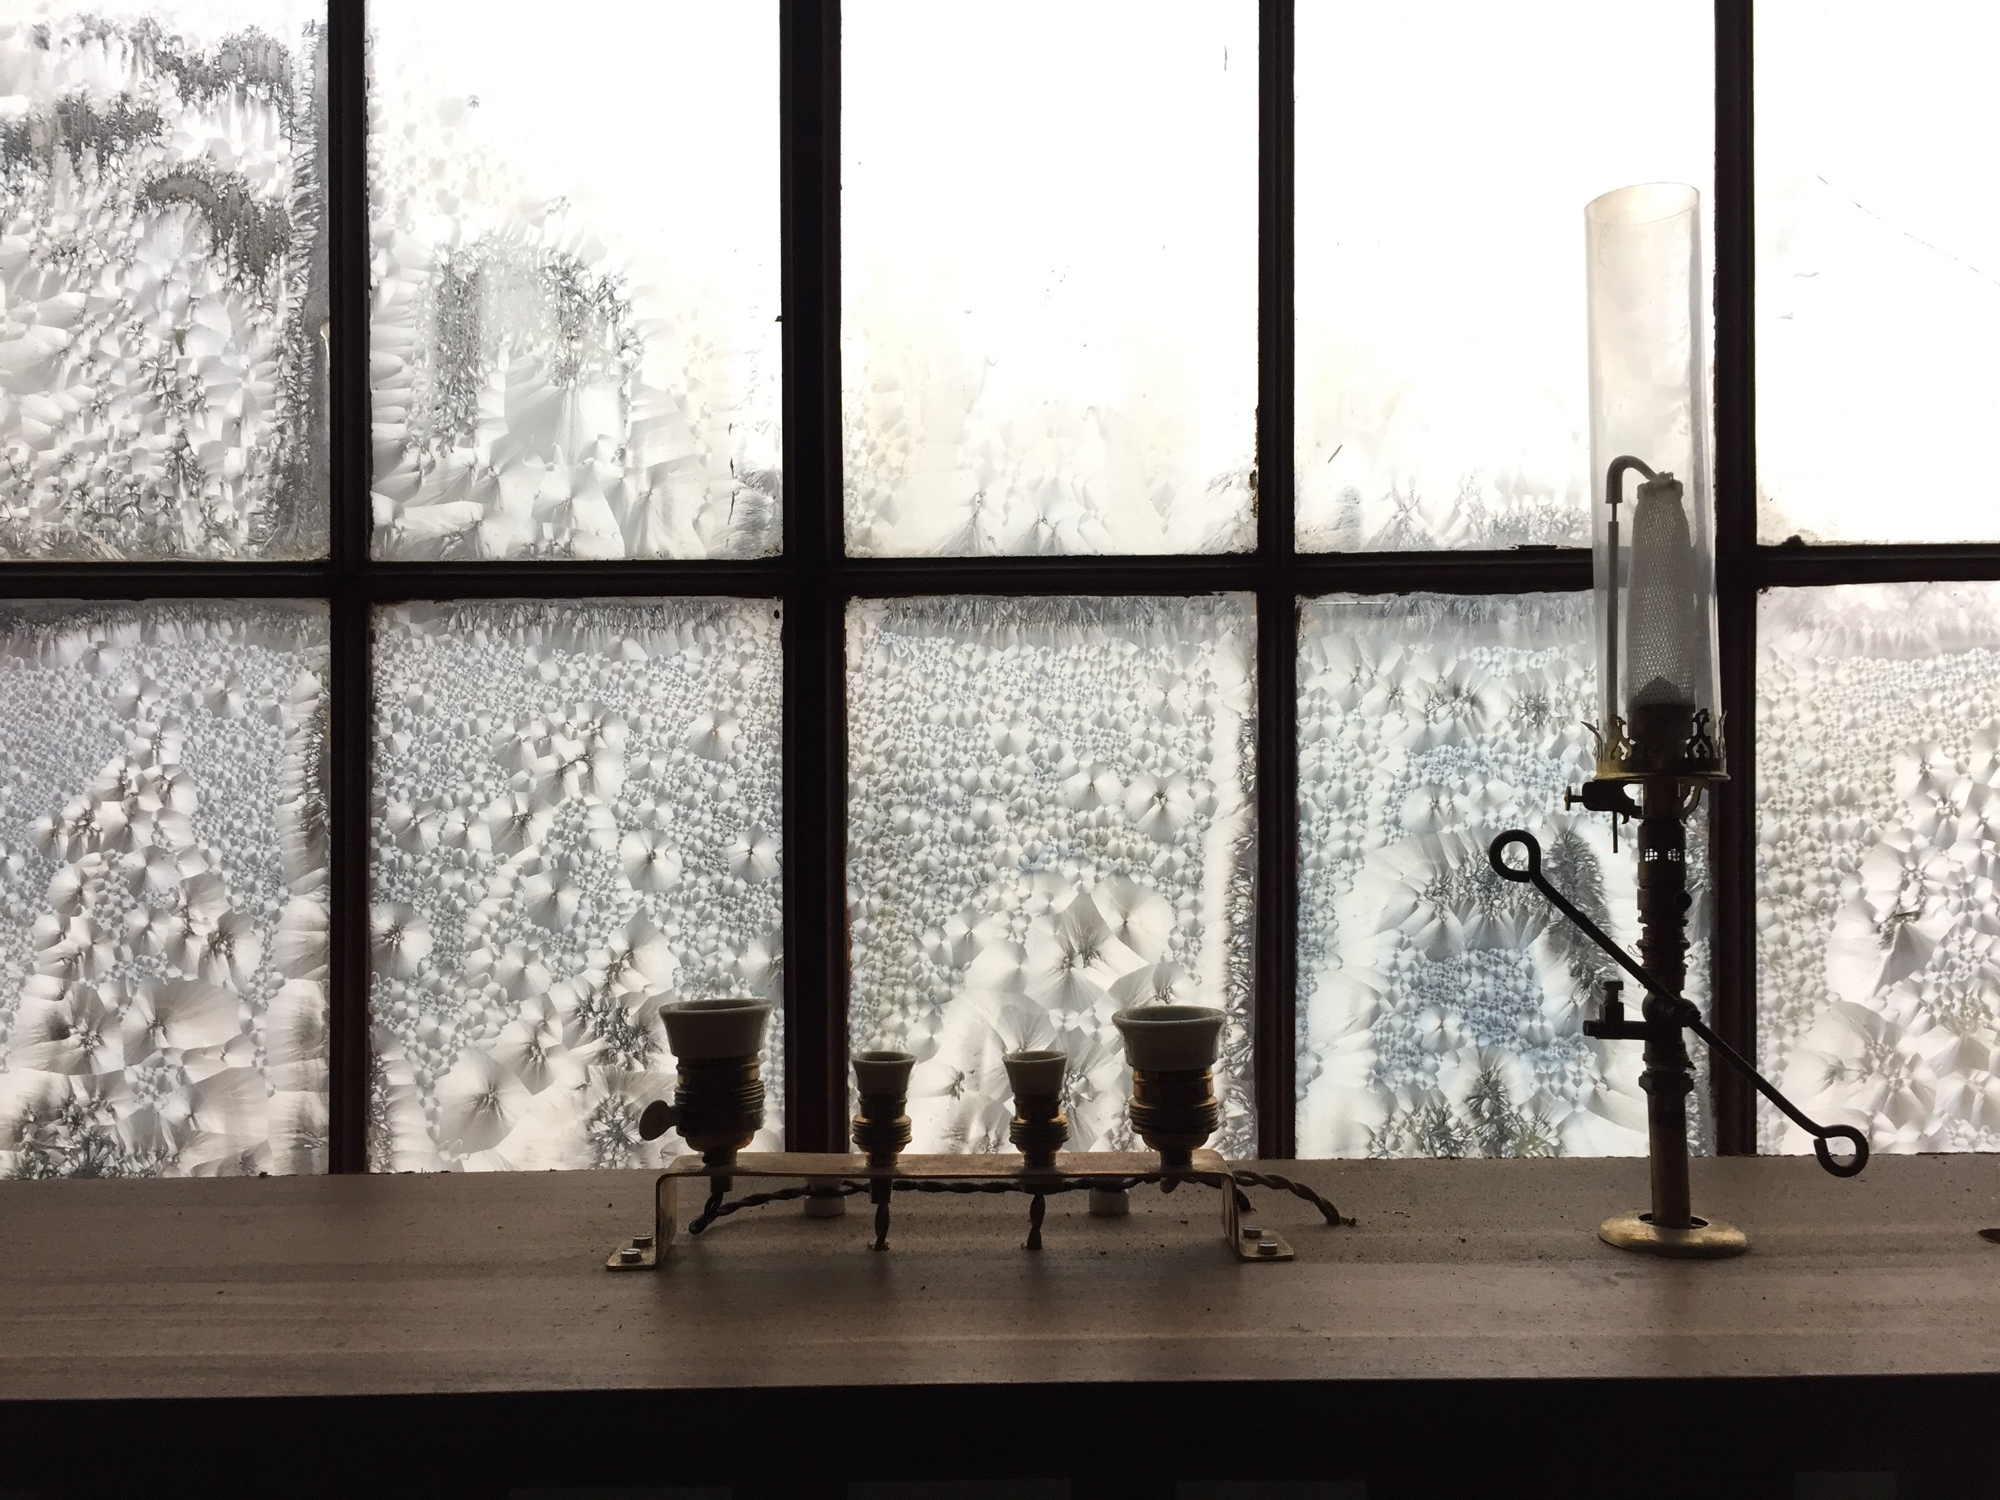 altmodische Gaslampen vor einem Fenster mit Eisblumen